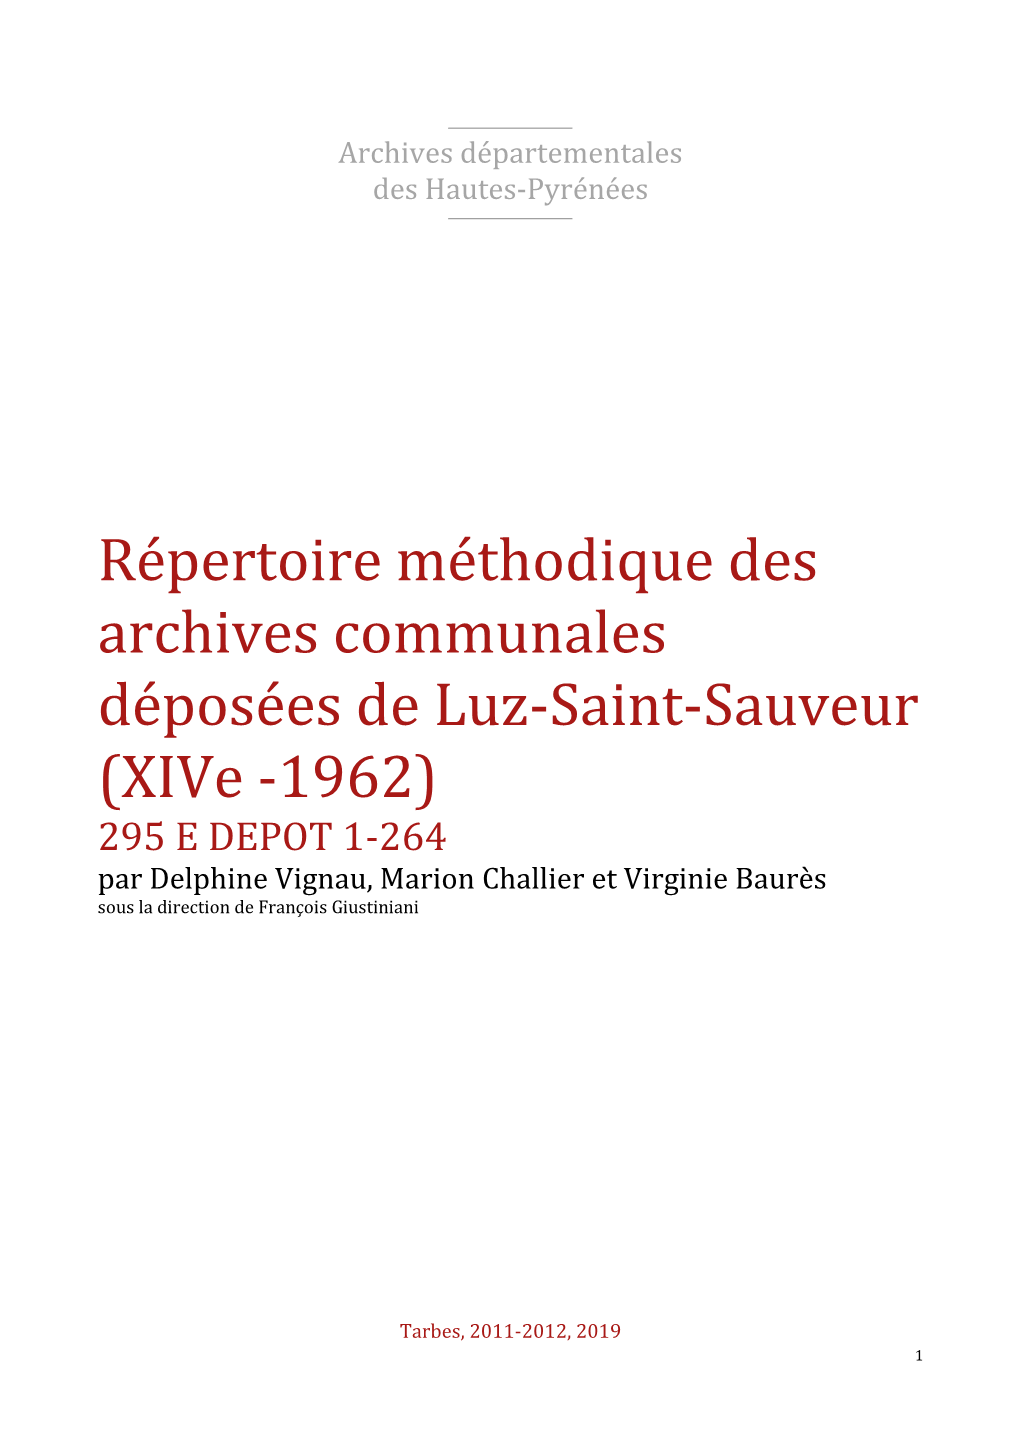 Répertoire Des Archives Déposées De Luz-Saint-Sauveur